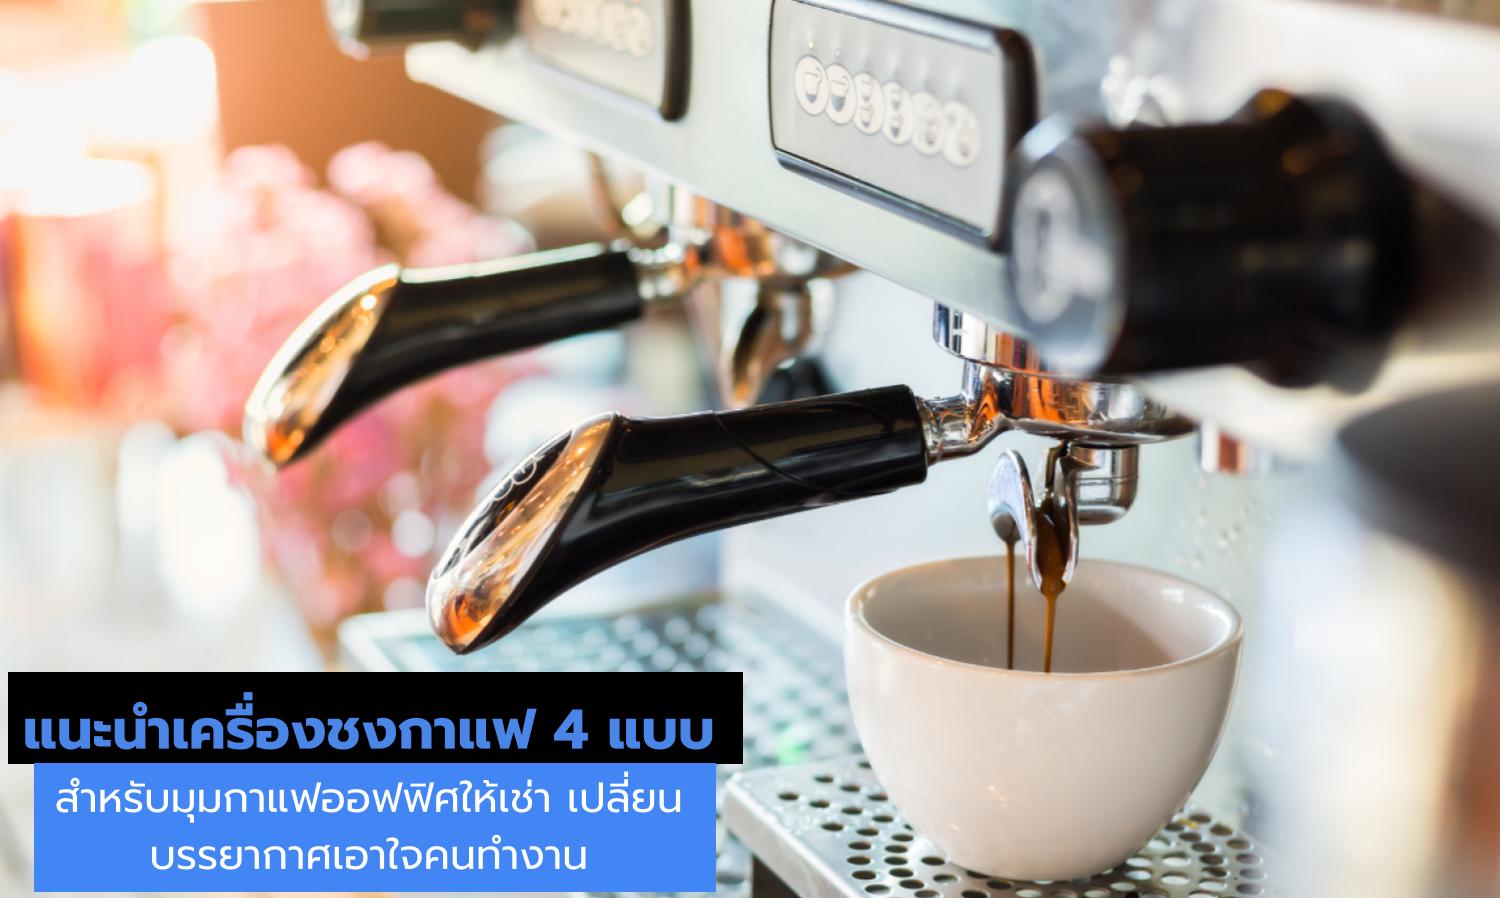 แนะนำเครื่องชงกาแฟ 4 แบบสำหรับมุมกาแฟออฟฟิศให้เช่า เปลี่ยนบรรยากาศเอาใจคนทำงาน